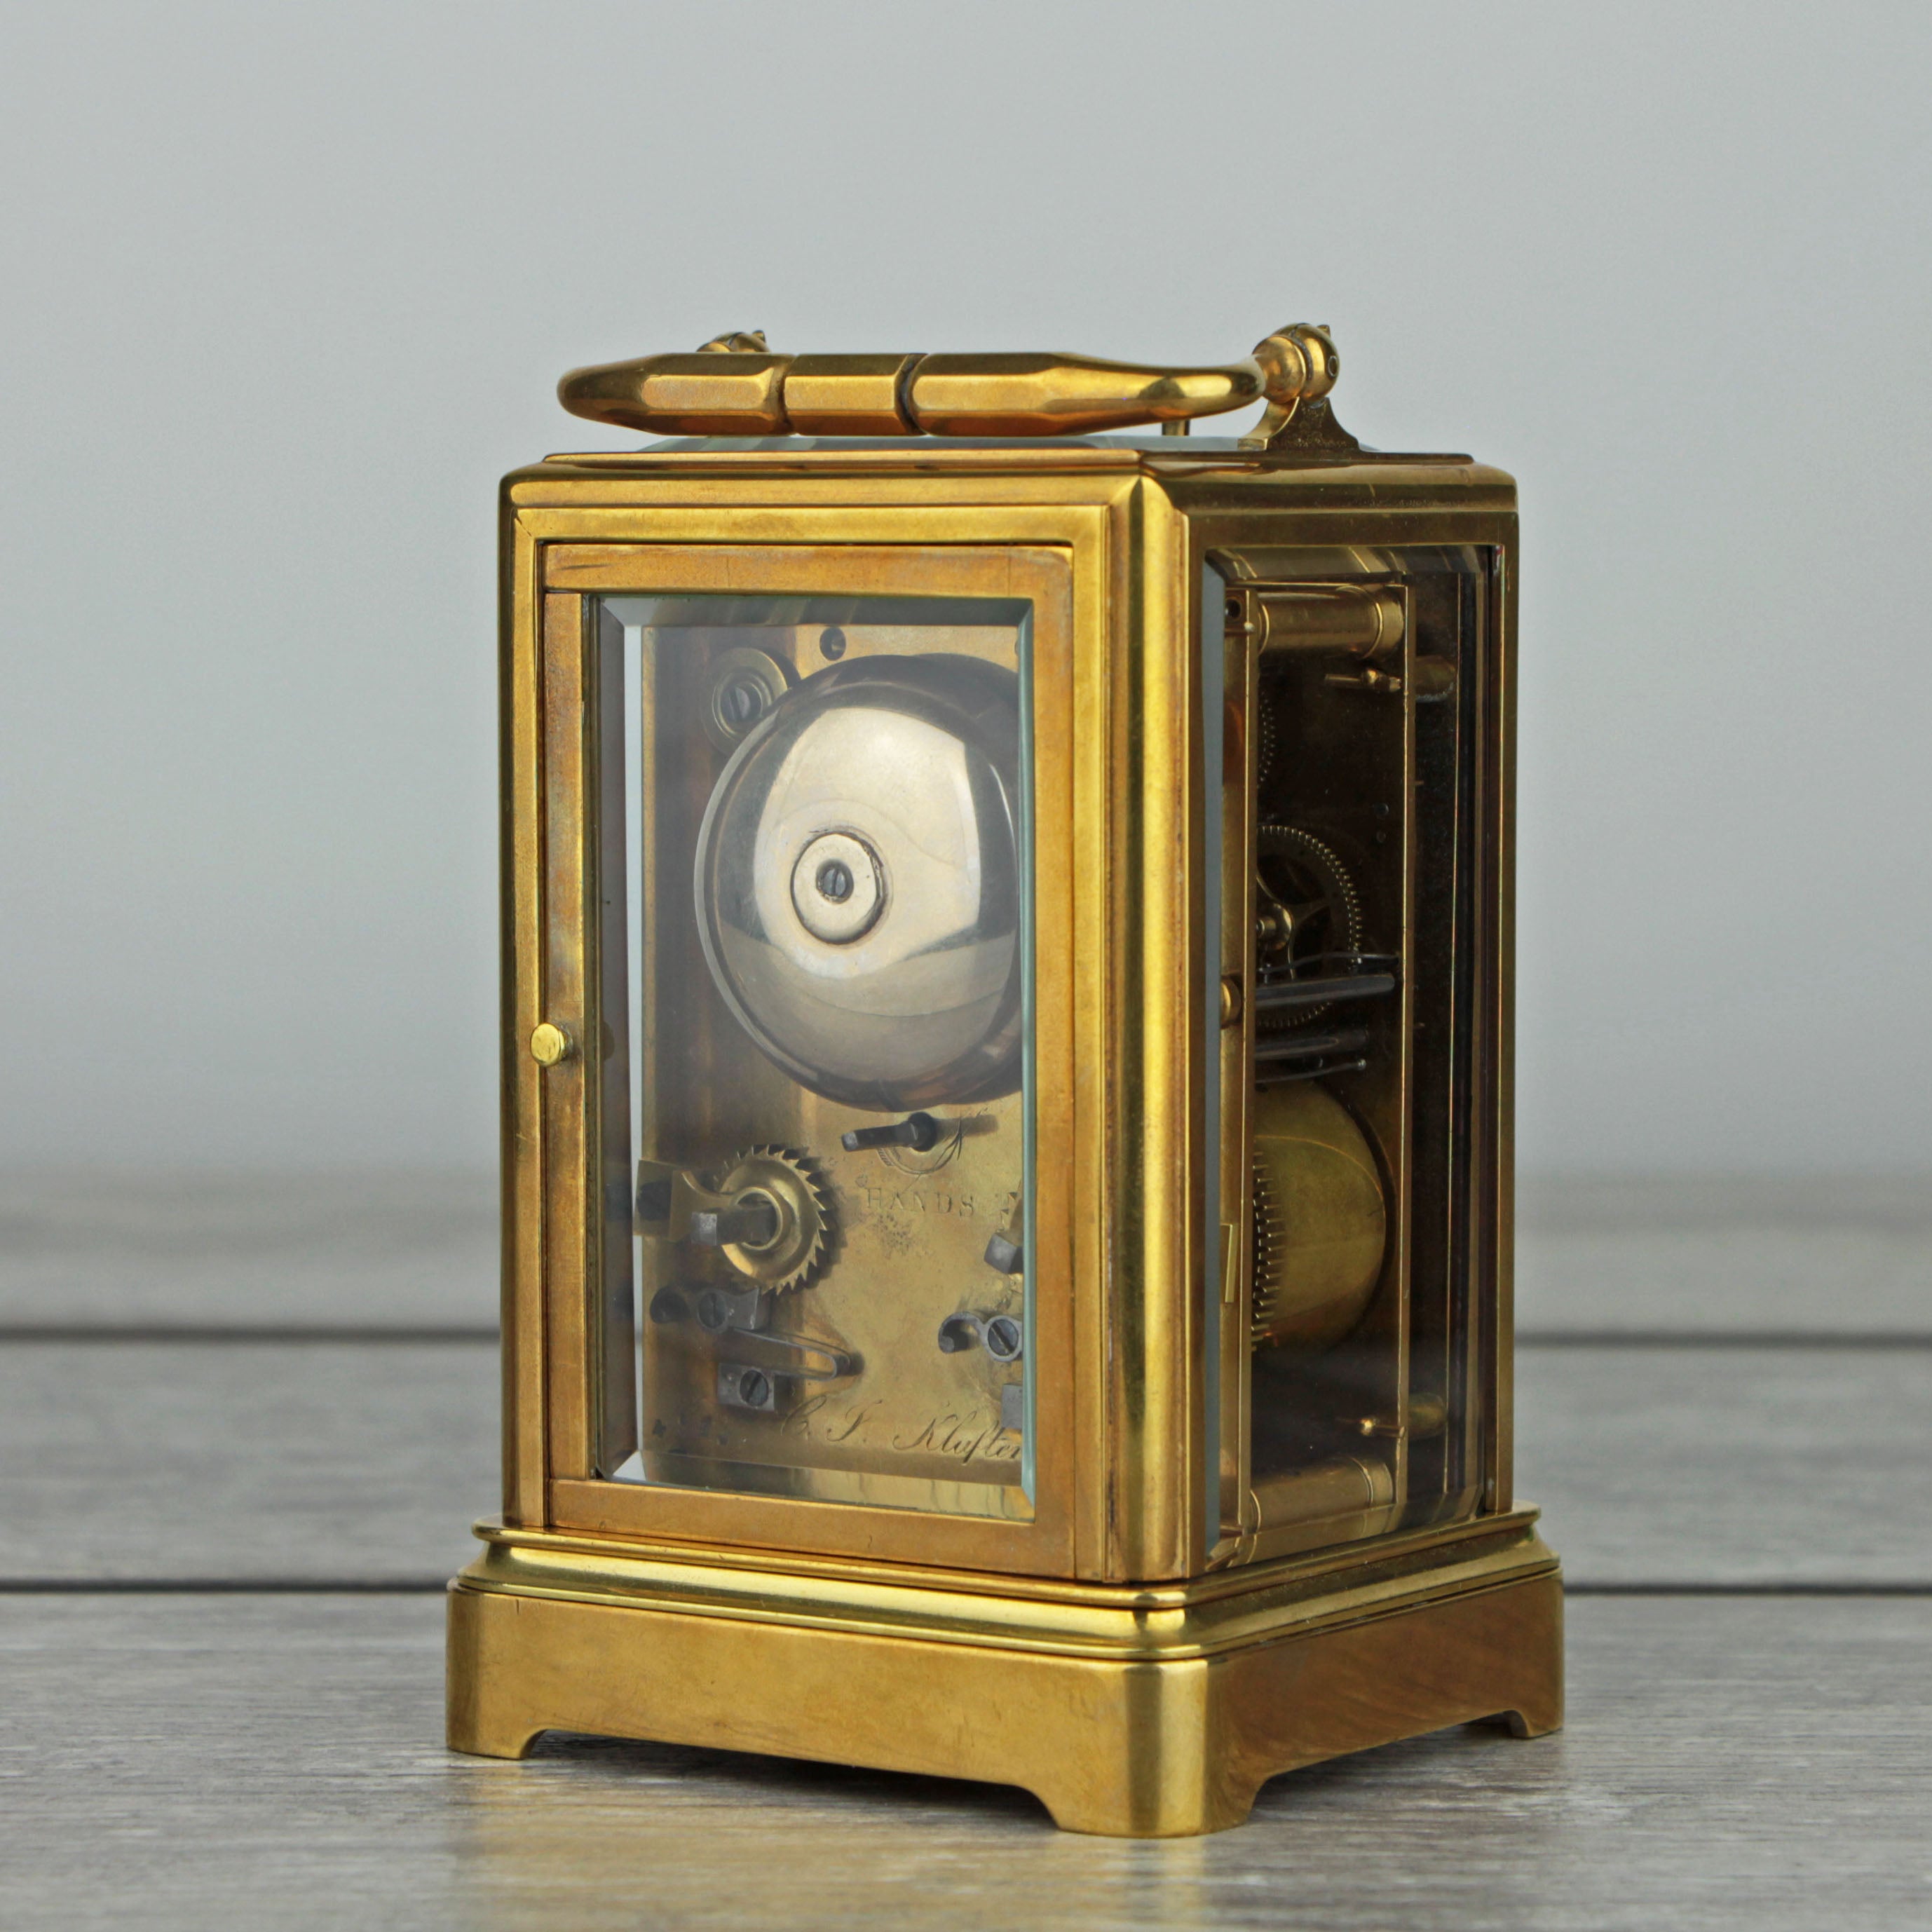 C.J. Klaftenberger c.1860 Carriage Clock